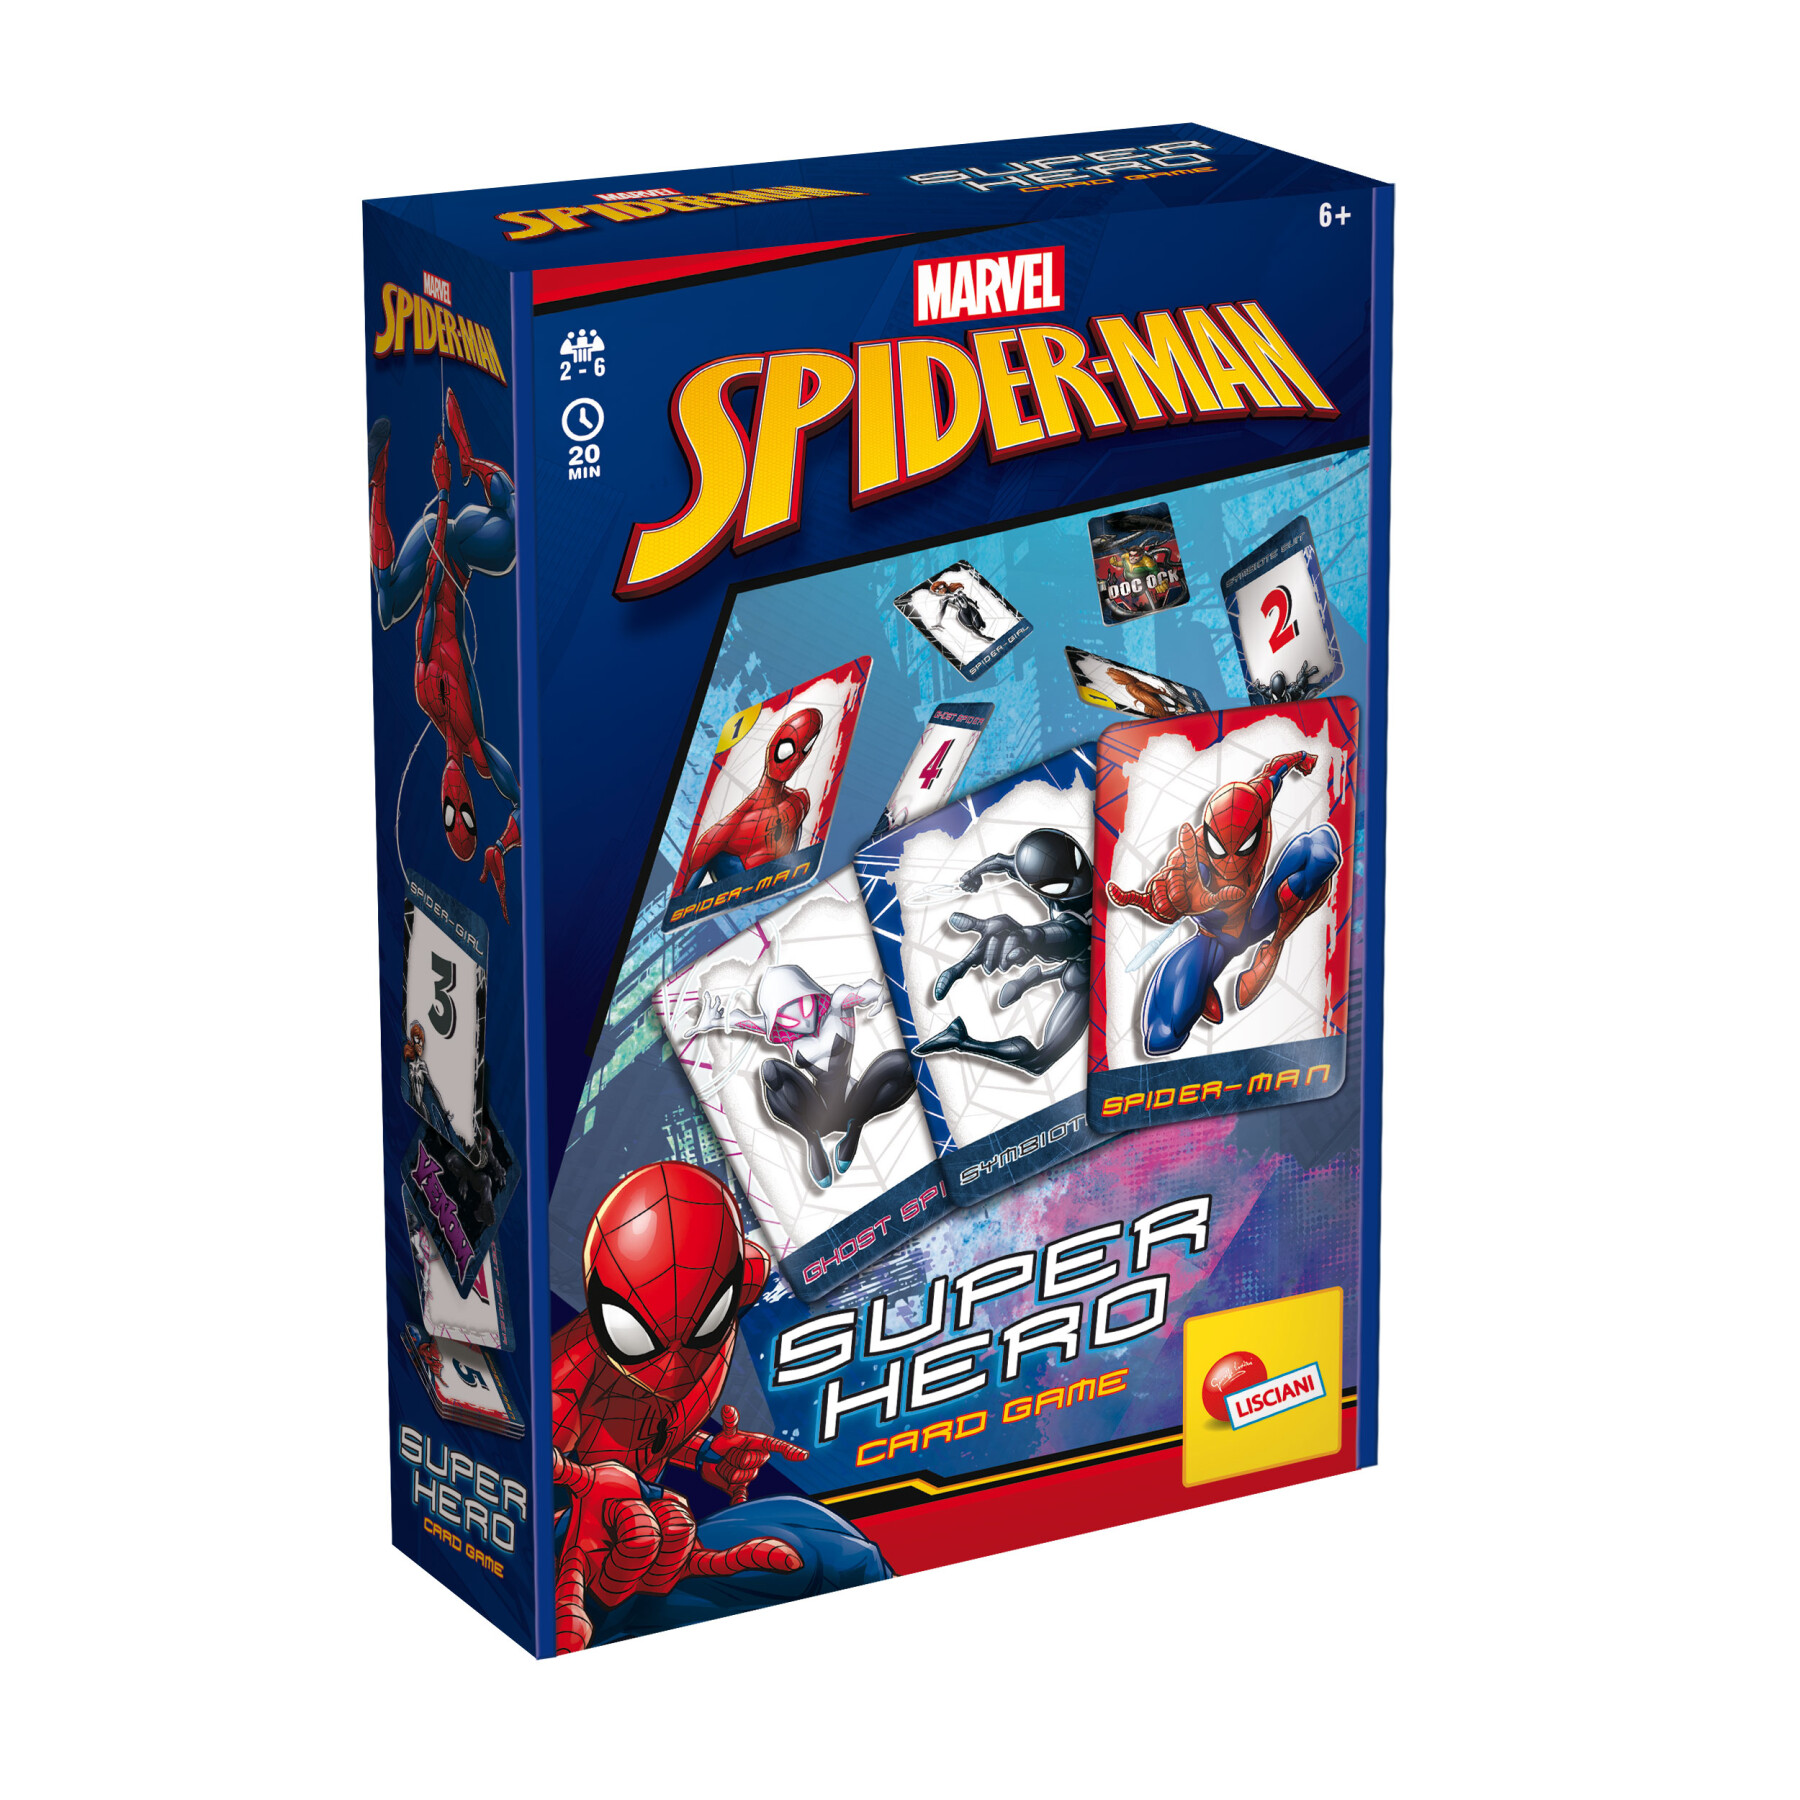 Paladone products Gioco di carte da gioco Marvel Spider-Man